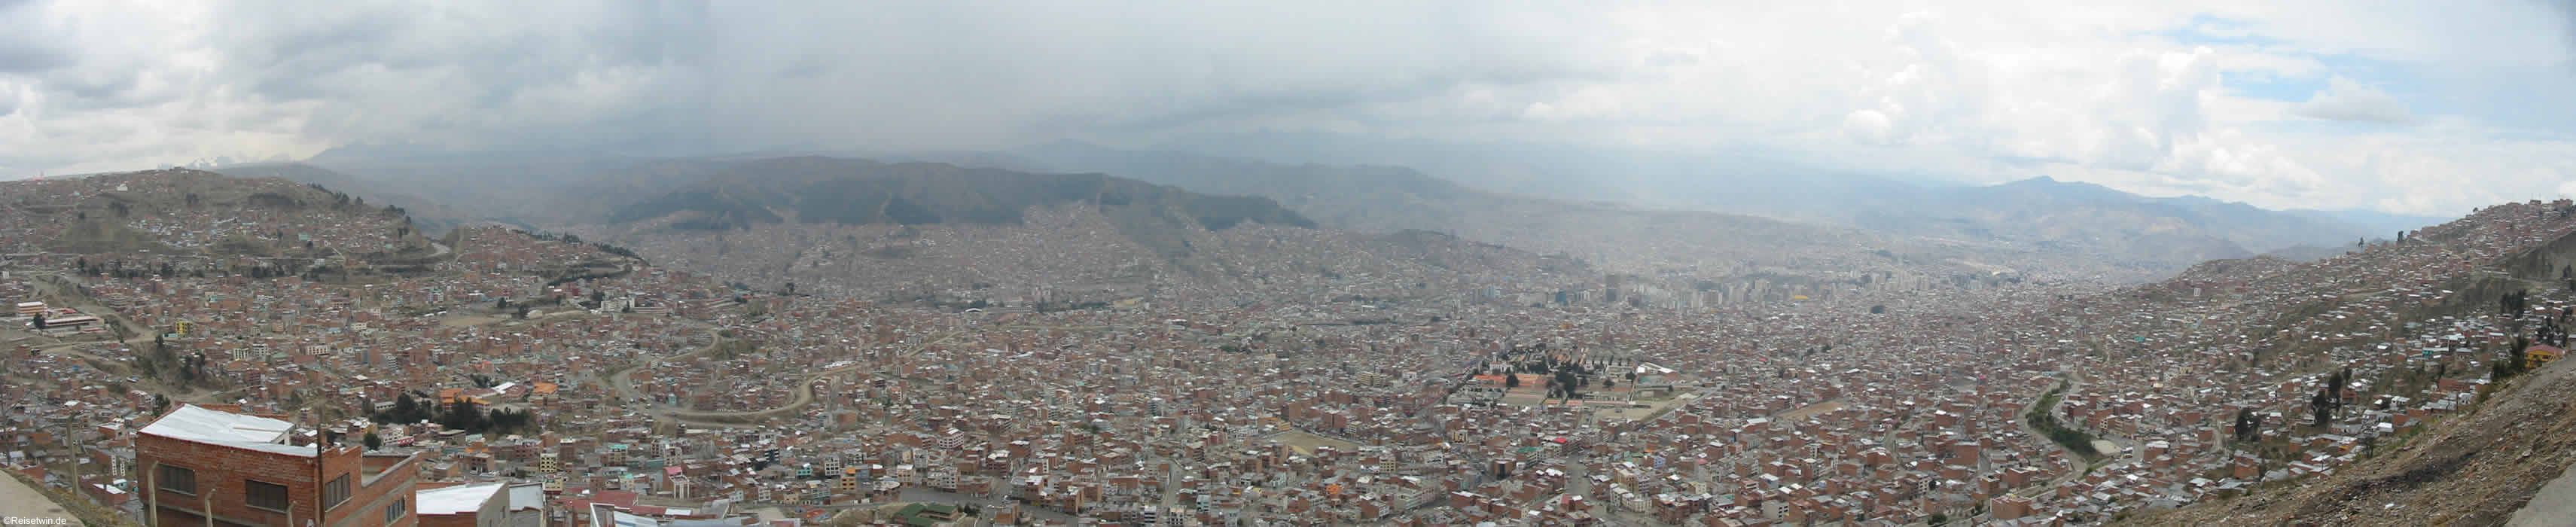  La Paz